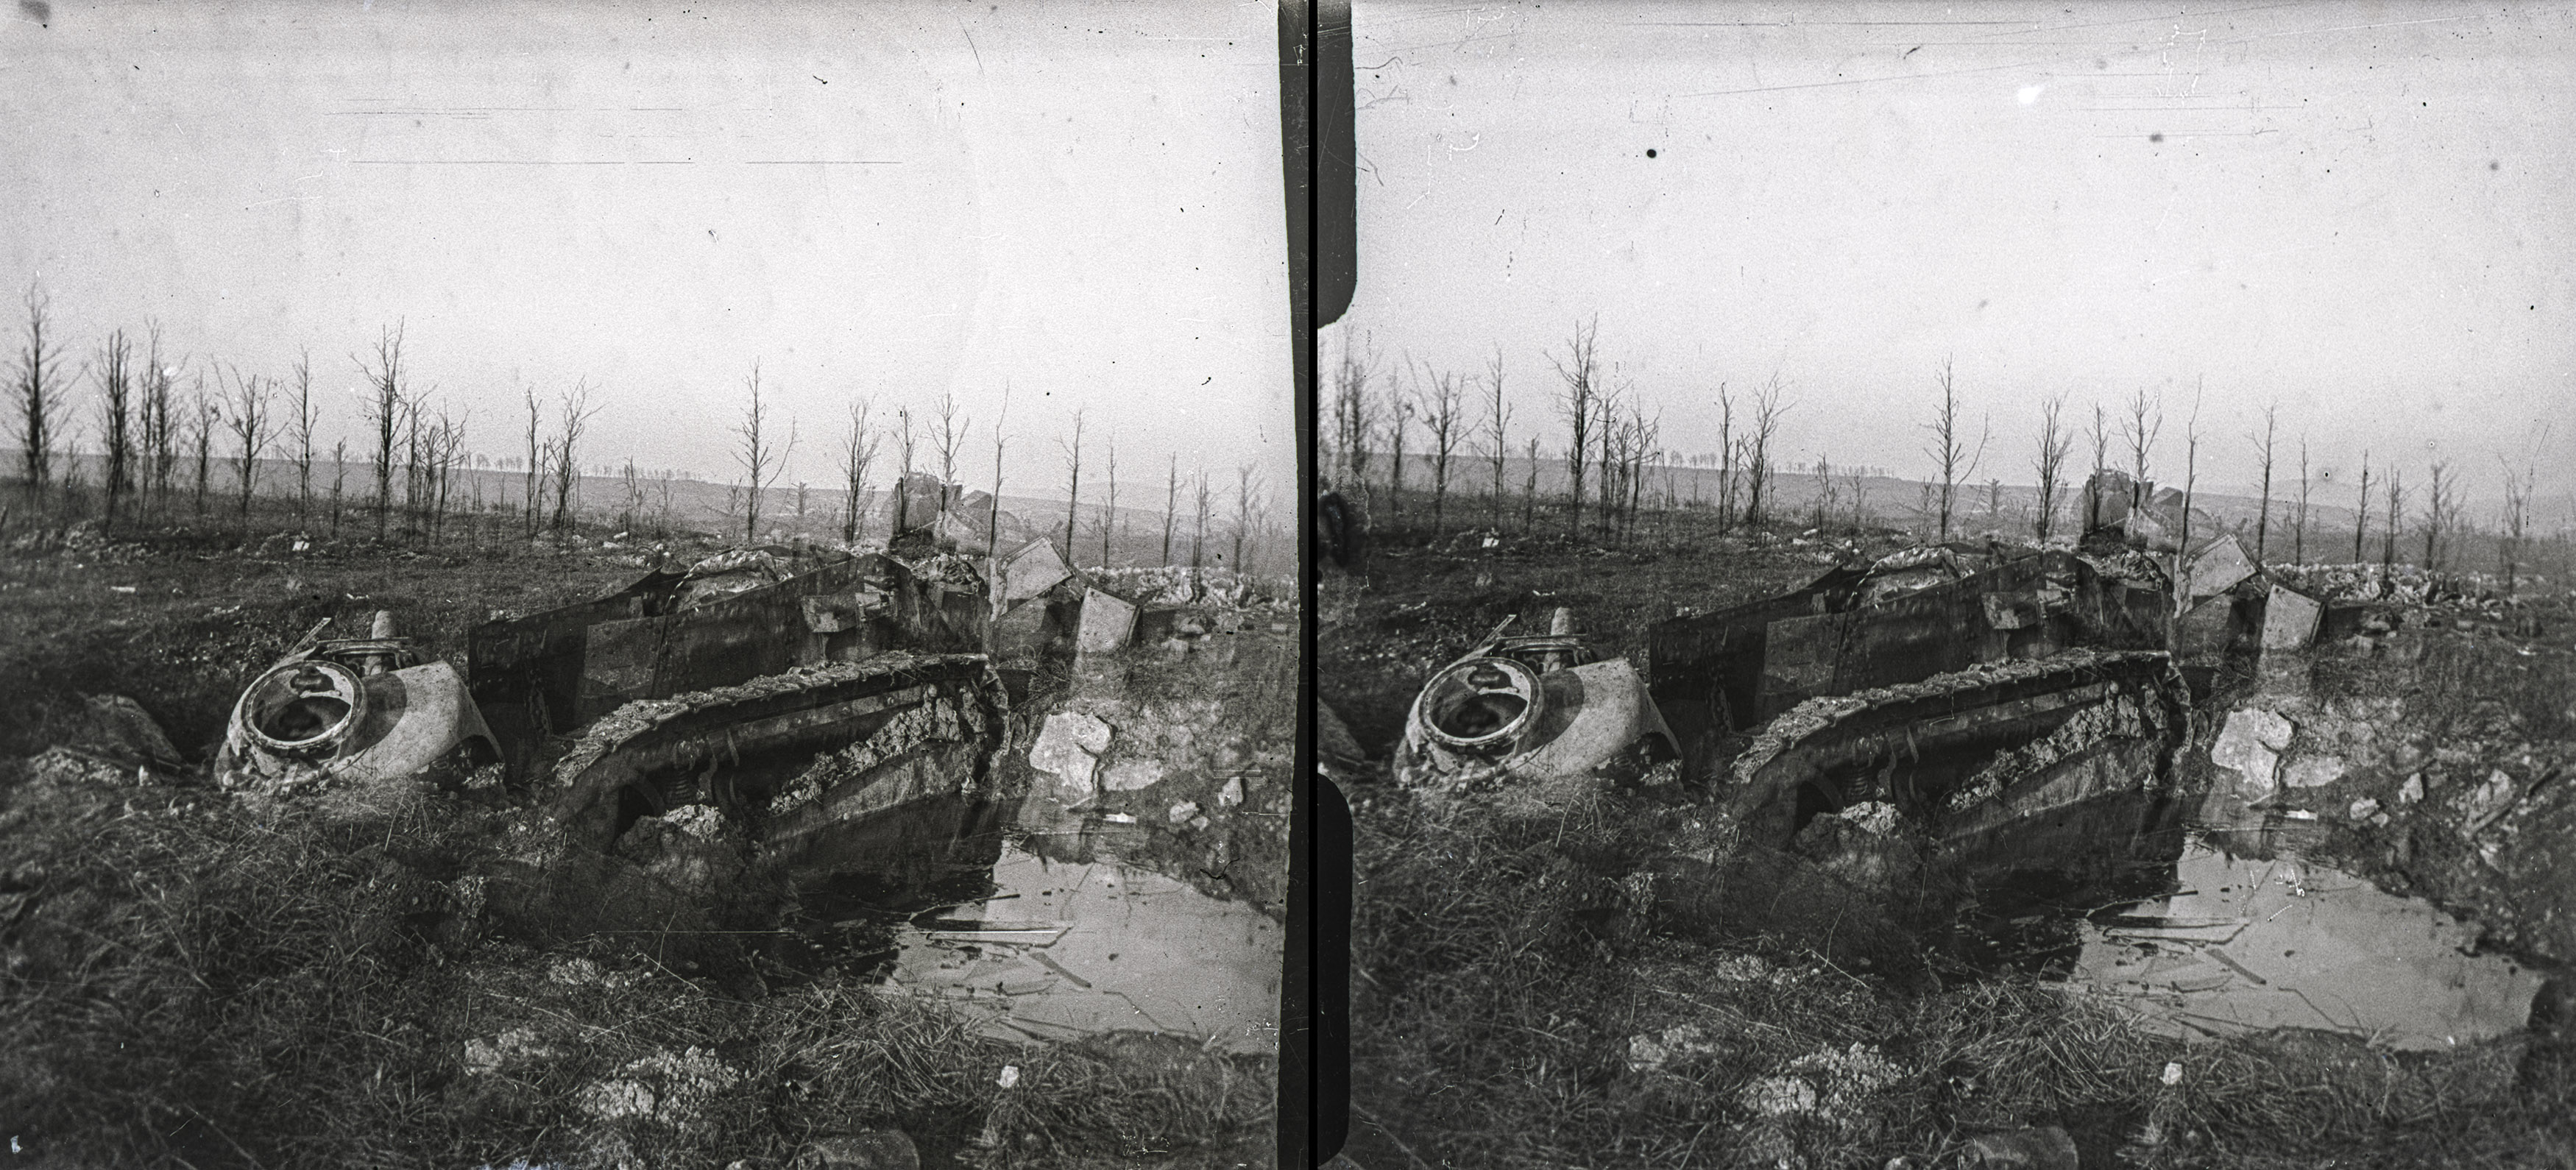 Bois d'Haumont, tank enlisé pendant l'attaque du bois - Bois d'Haumont, tank bogged down during the attack on the wood